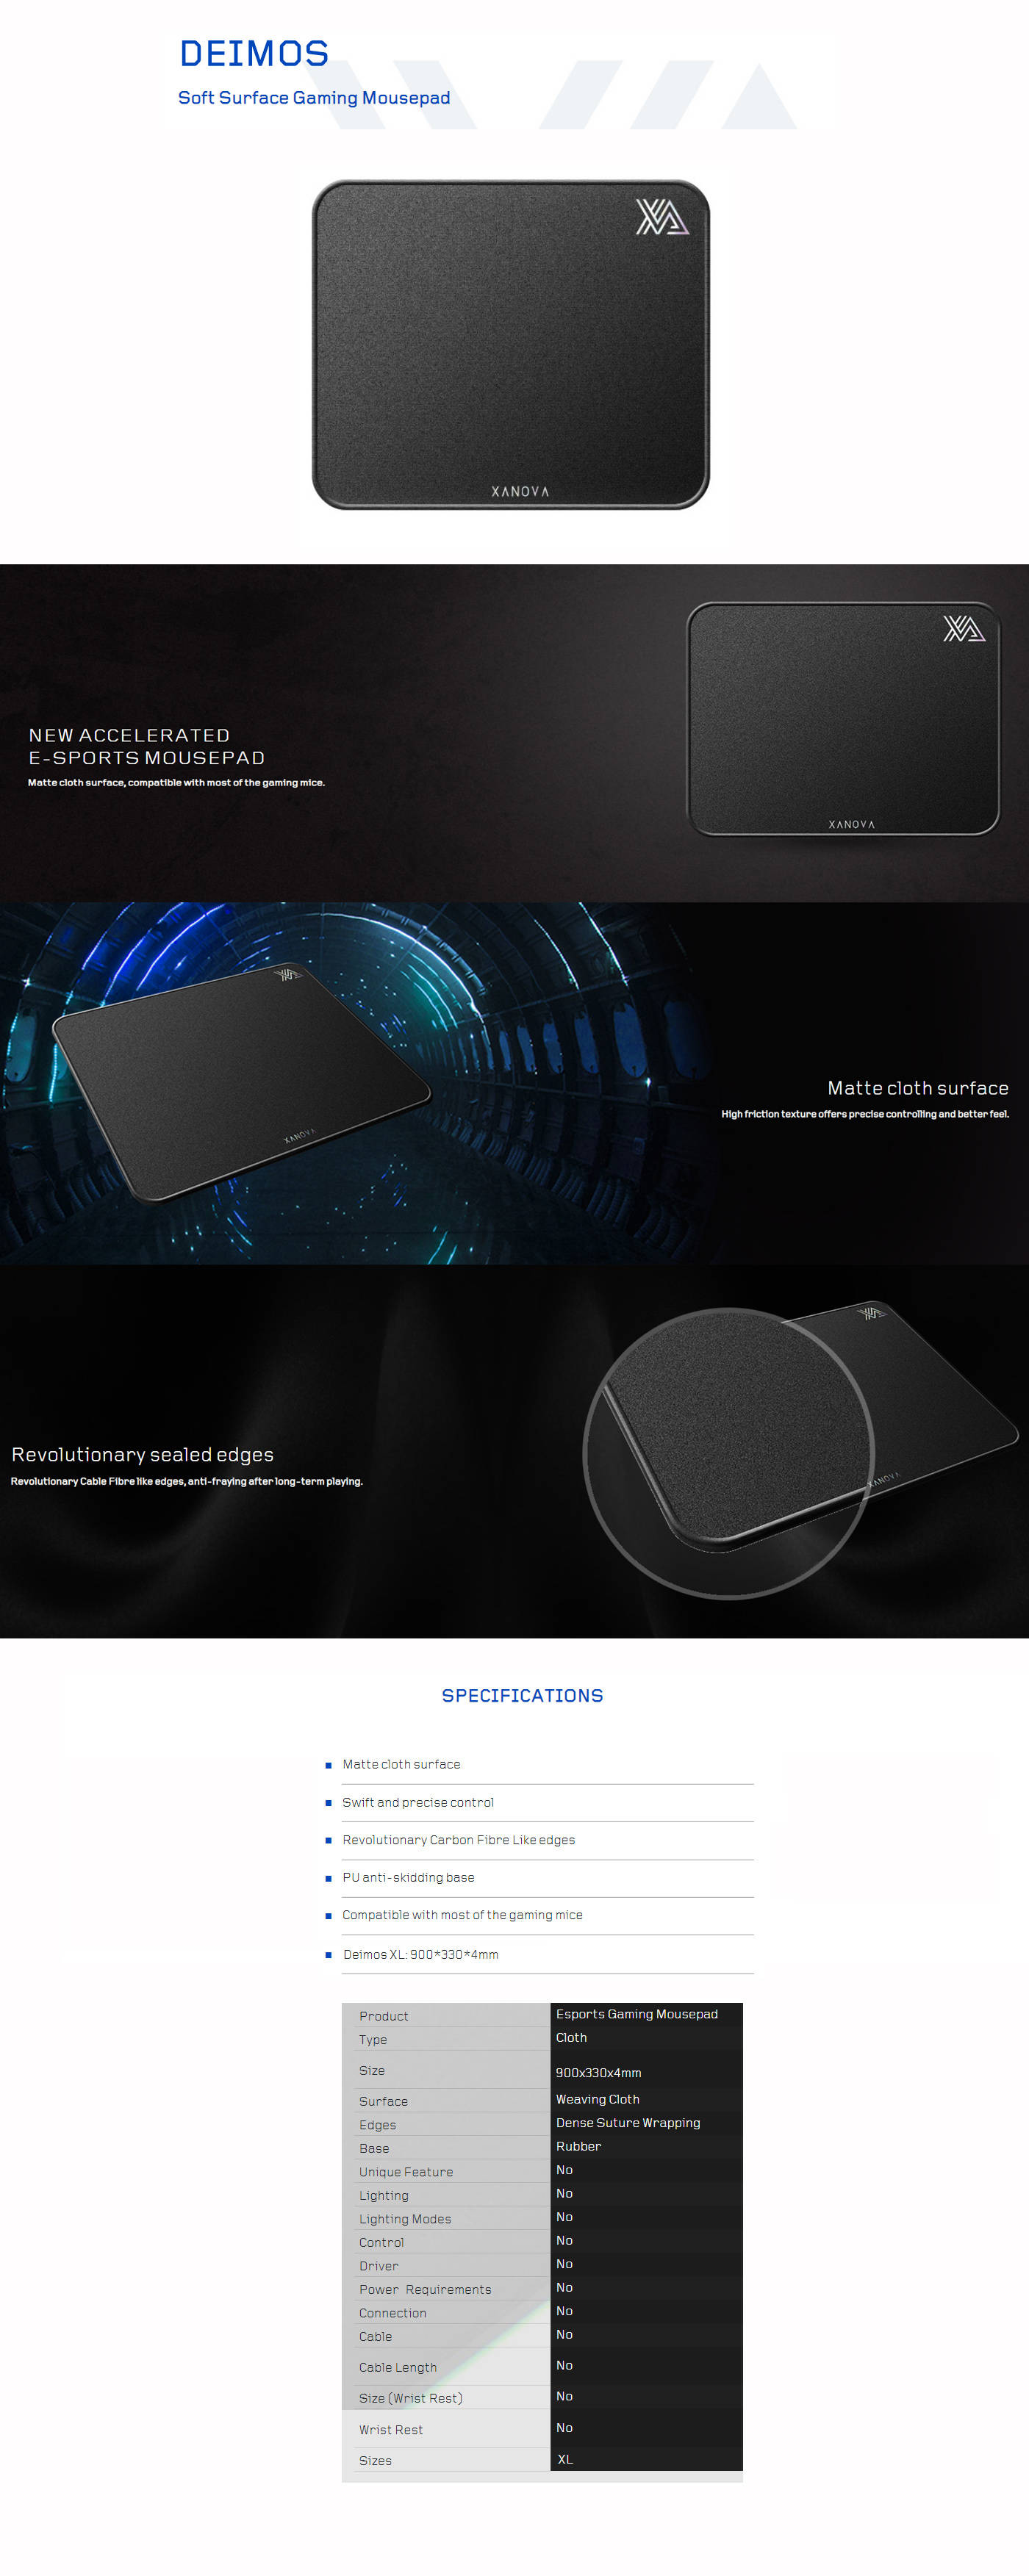  Buy Online Xanova Deimos XL Gaming Mousepad